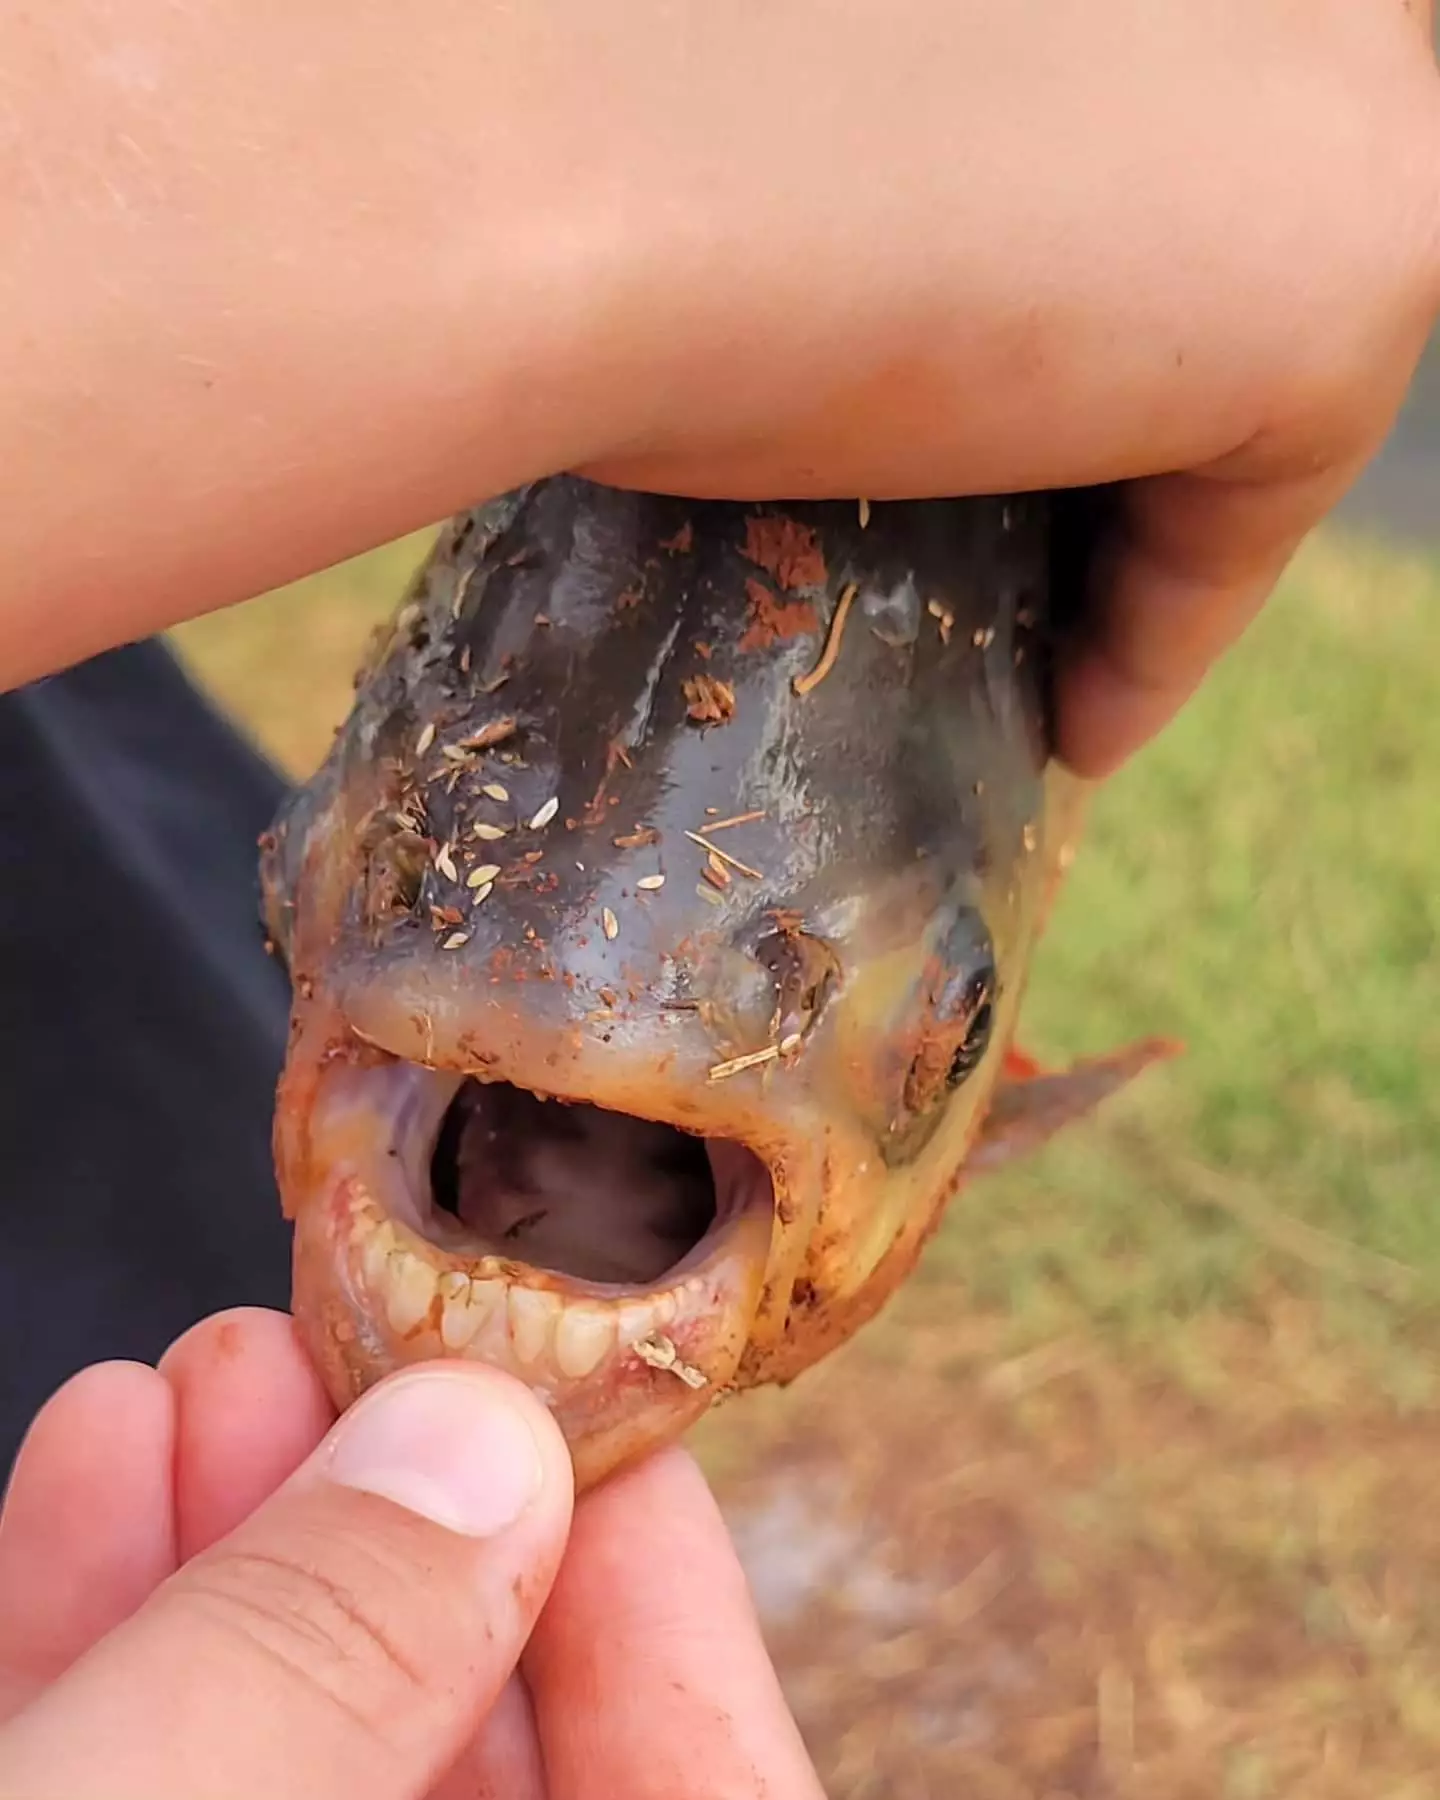 The unusual-looking fish had some human-like teeth.